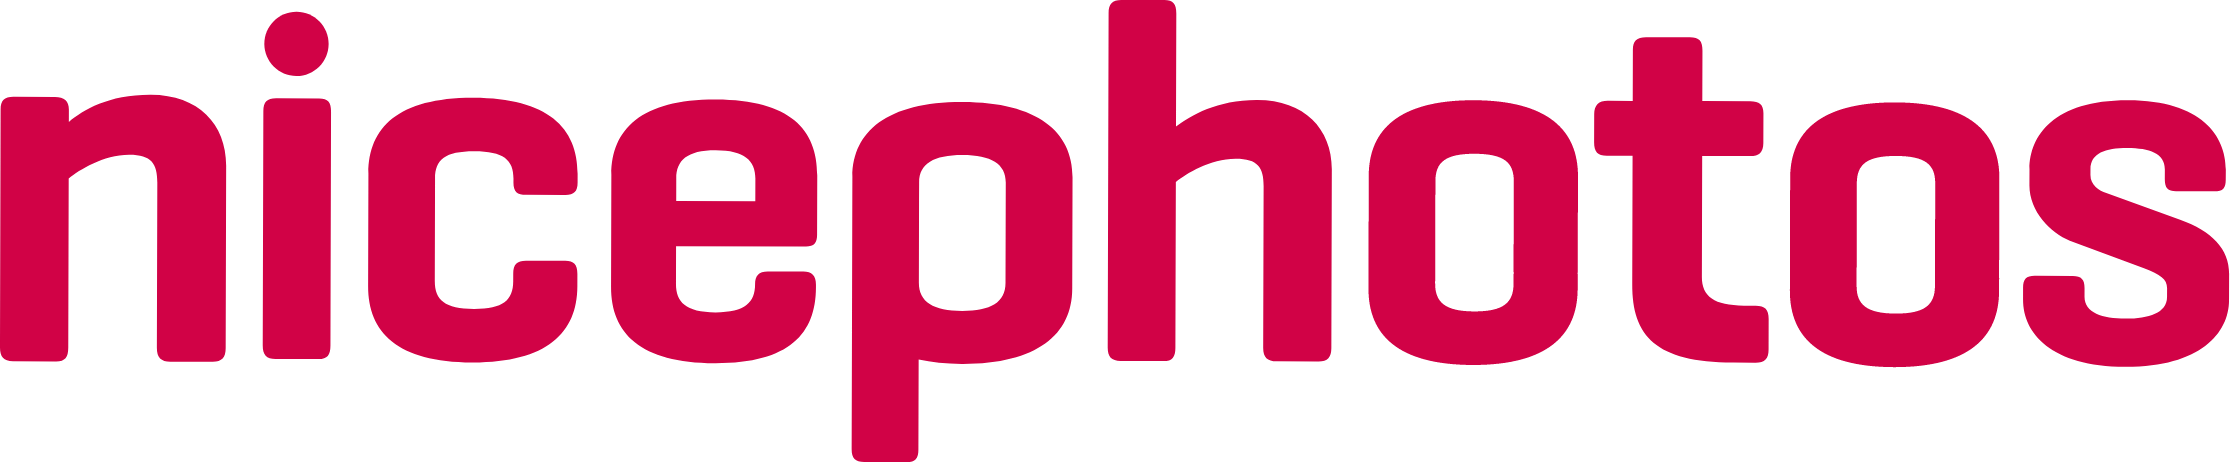 Logo Nicephotos